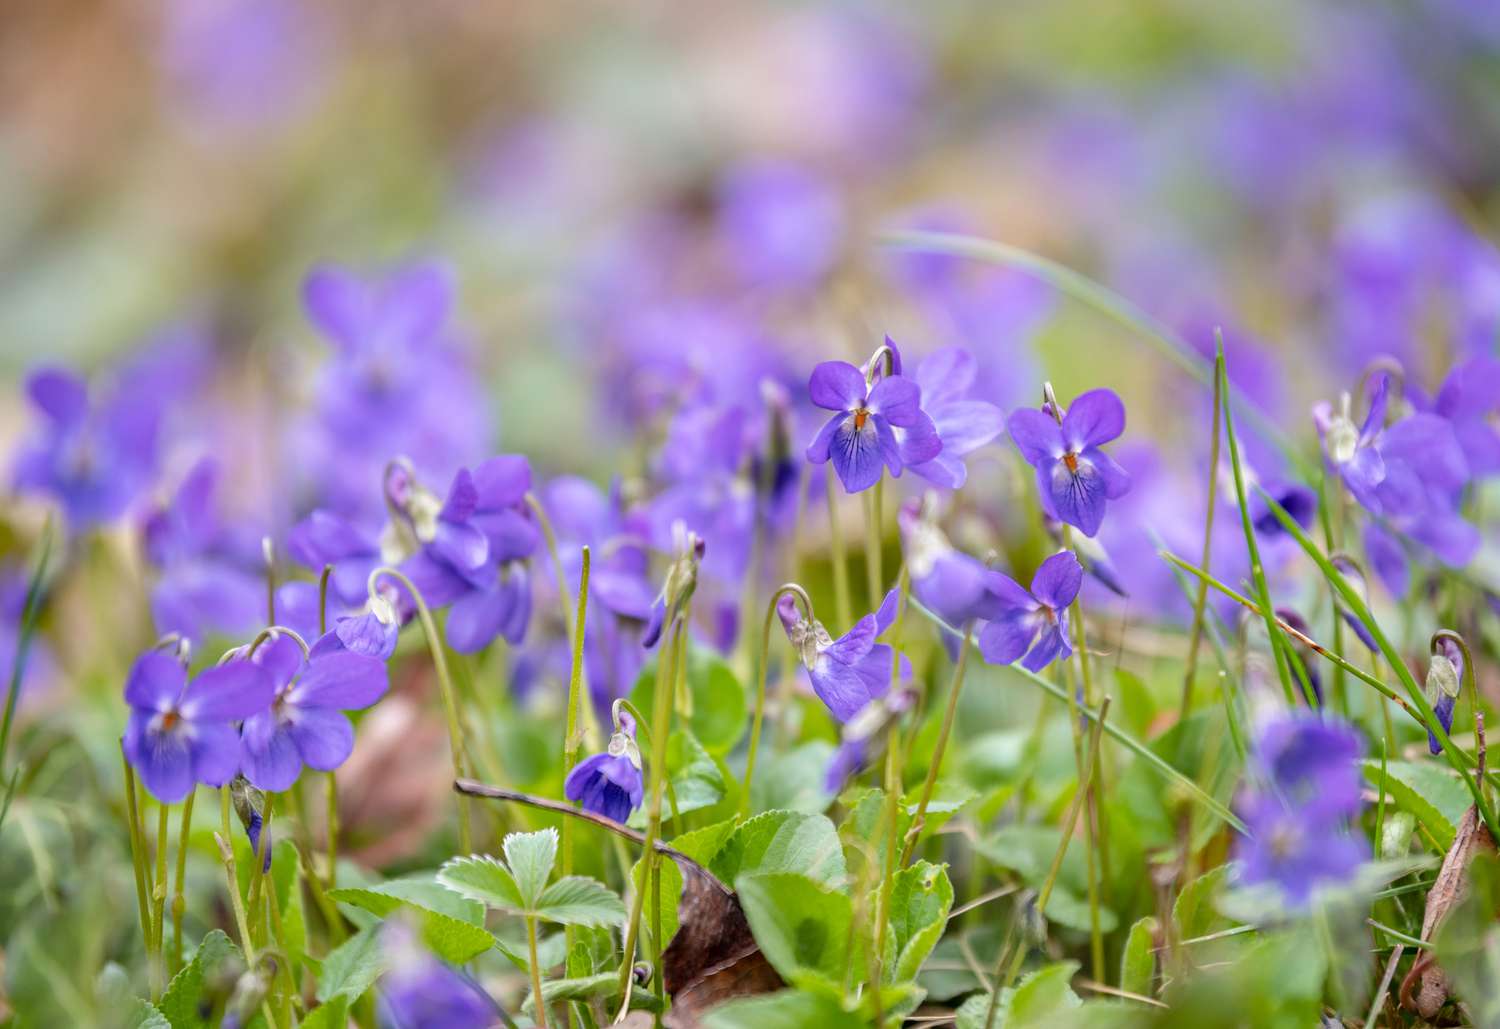 Violette Pflanze mit kleinen fünfblättrigen violetten Blüten an dünnen Stielen